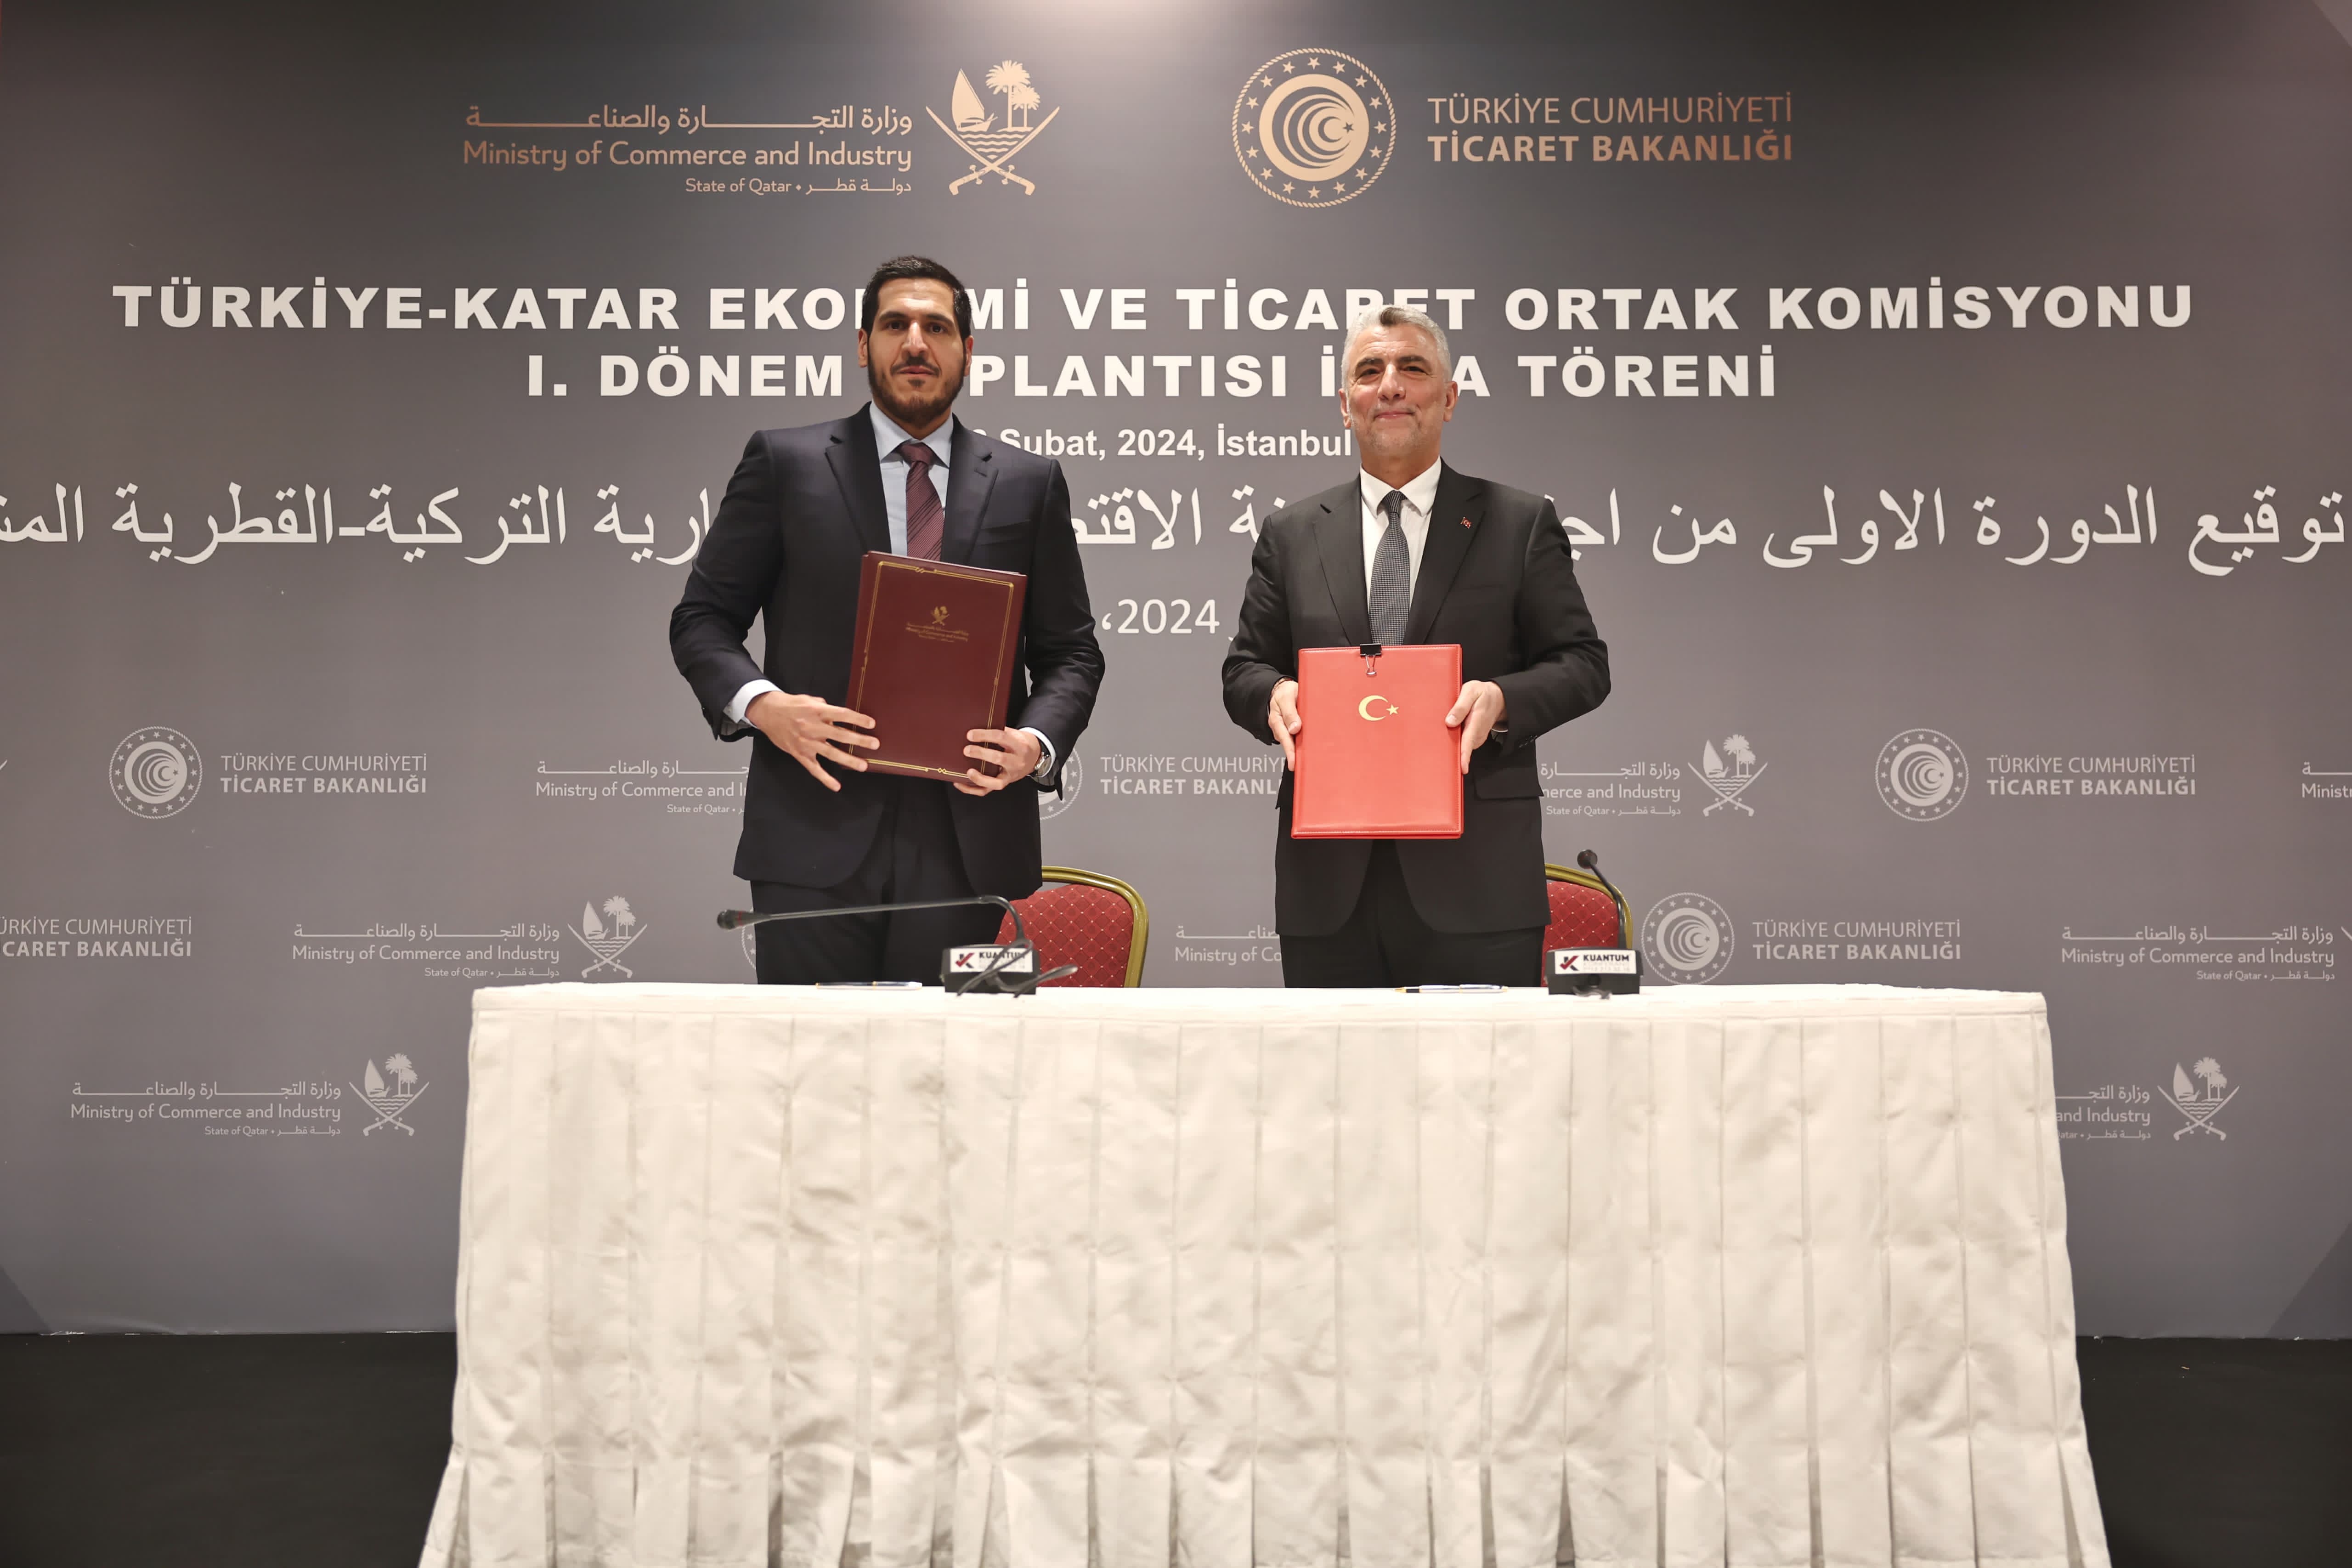 انعقاد الدورة الأولى للجنة المشتركة القطرية التركية للتعاون الاقتصادي والتجاري بإسطنبول  